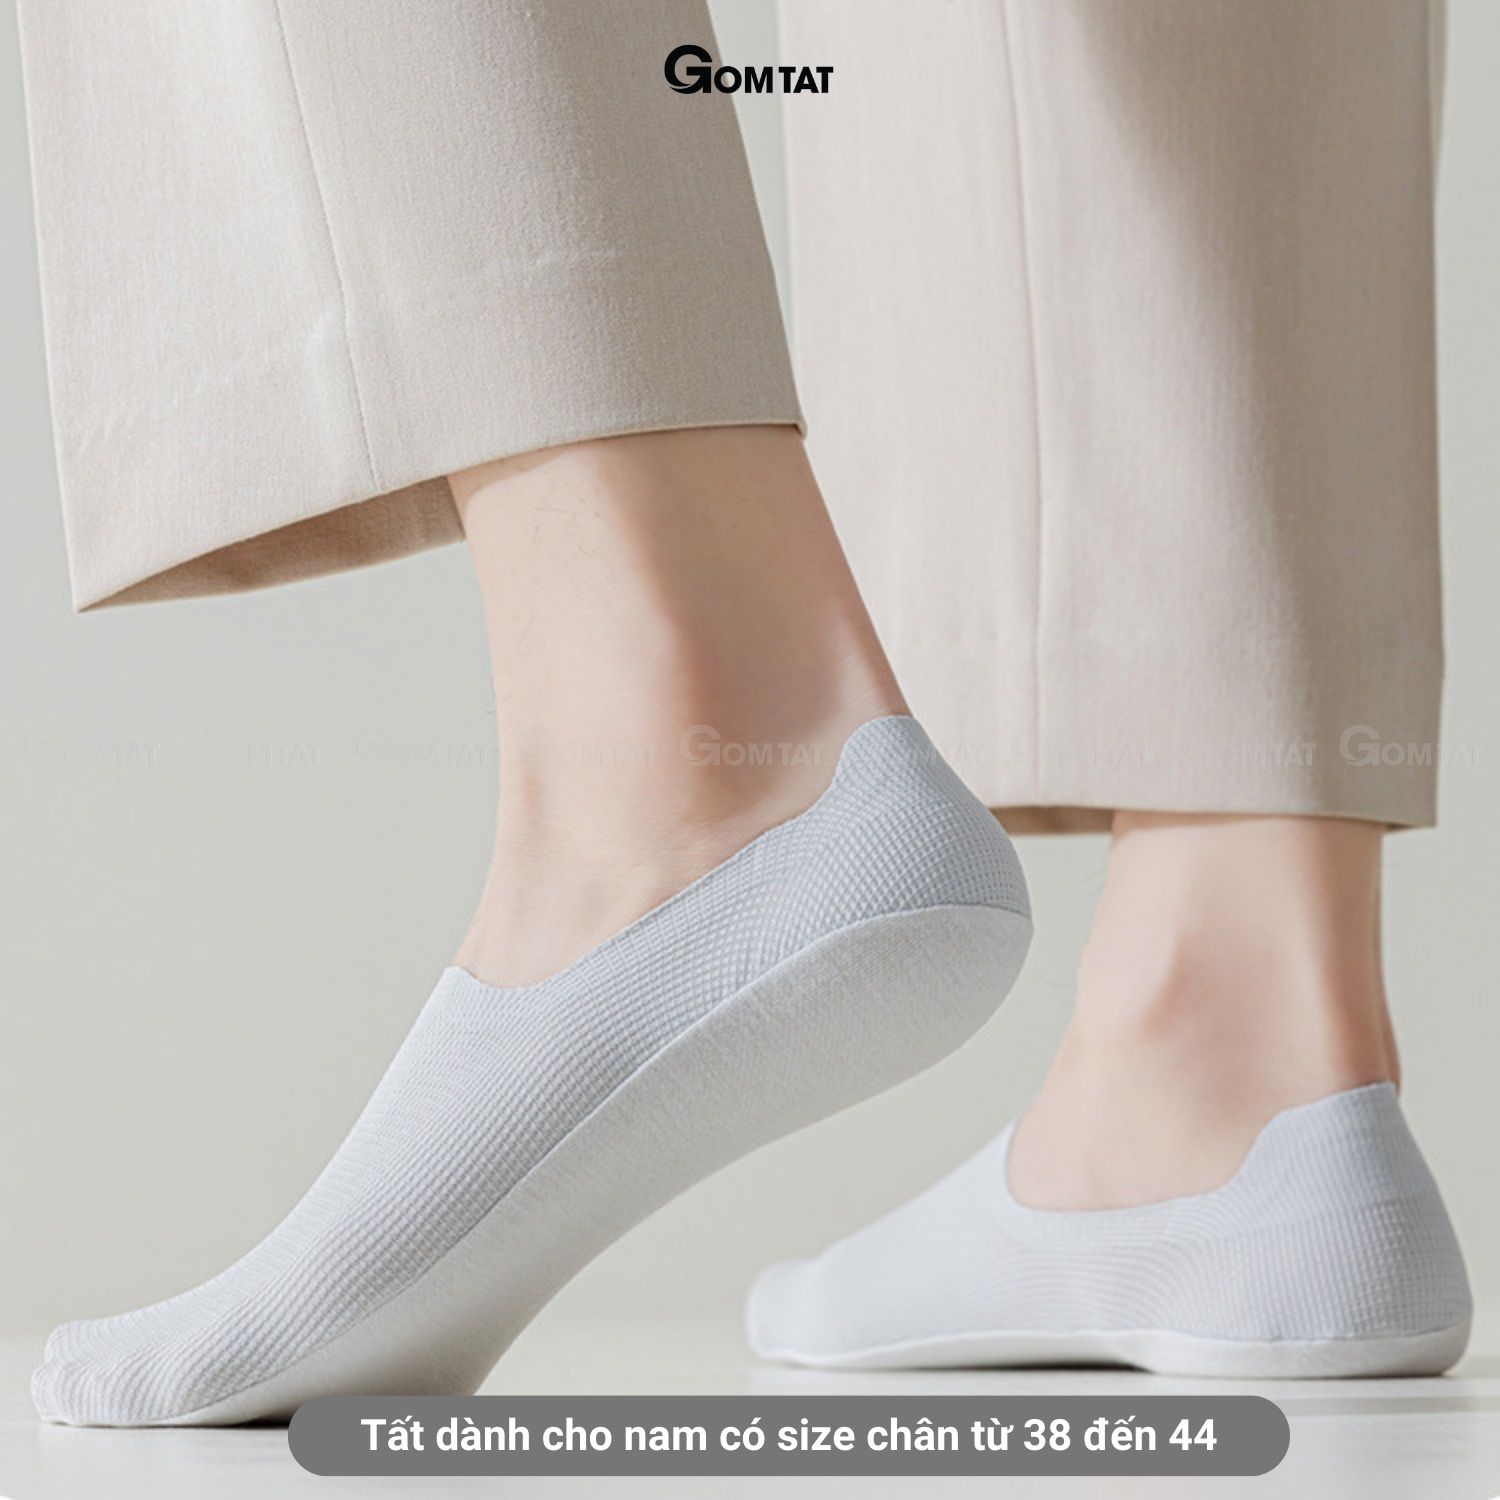 Combo 5 đôi tất lười nam có đệm silicon chống tuột gót, vớ nam đi giày lười chất liệu cotton khử mùi - HNA-OYU-1501-CB5